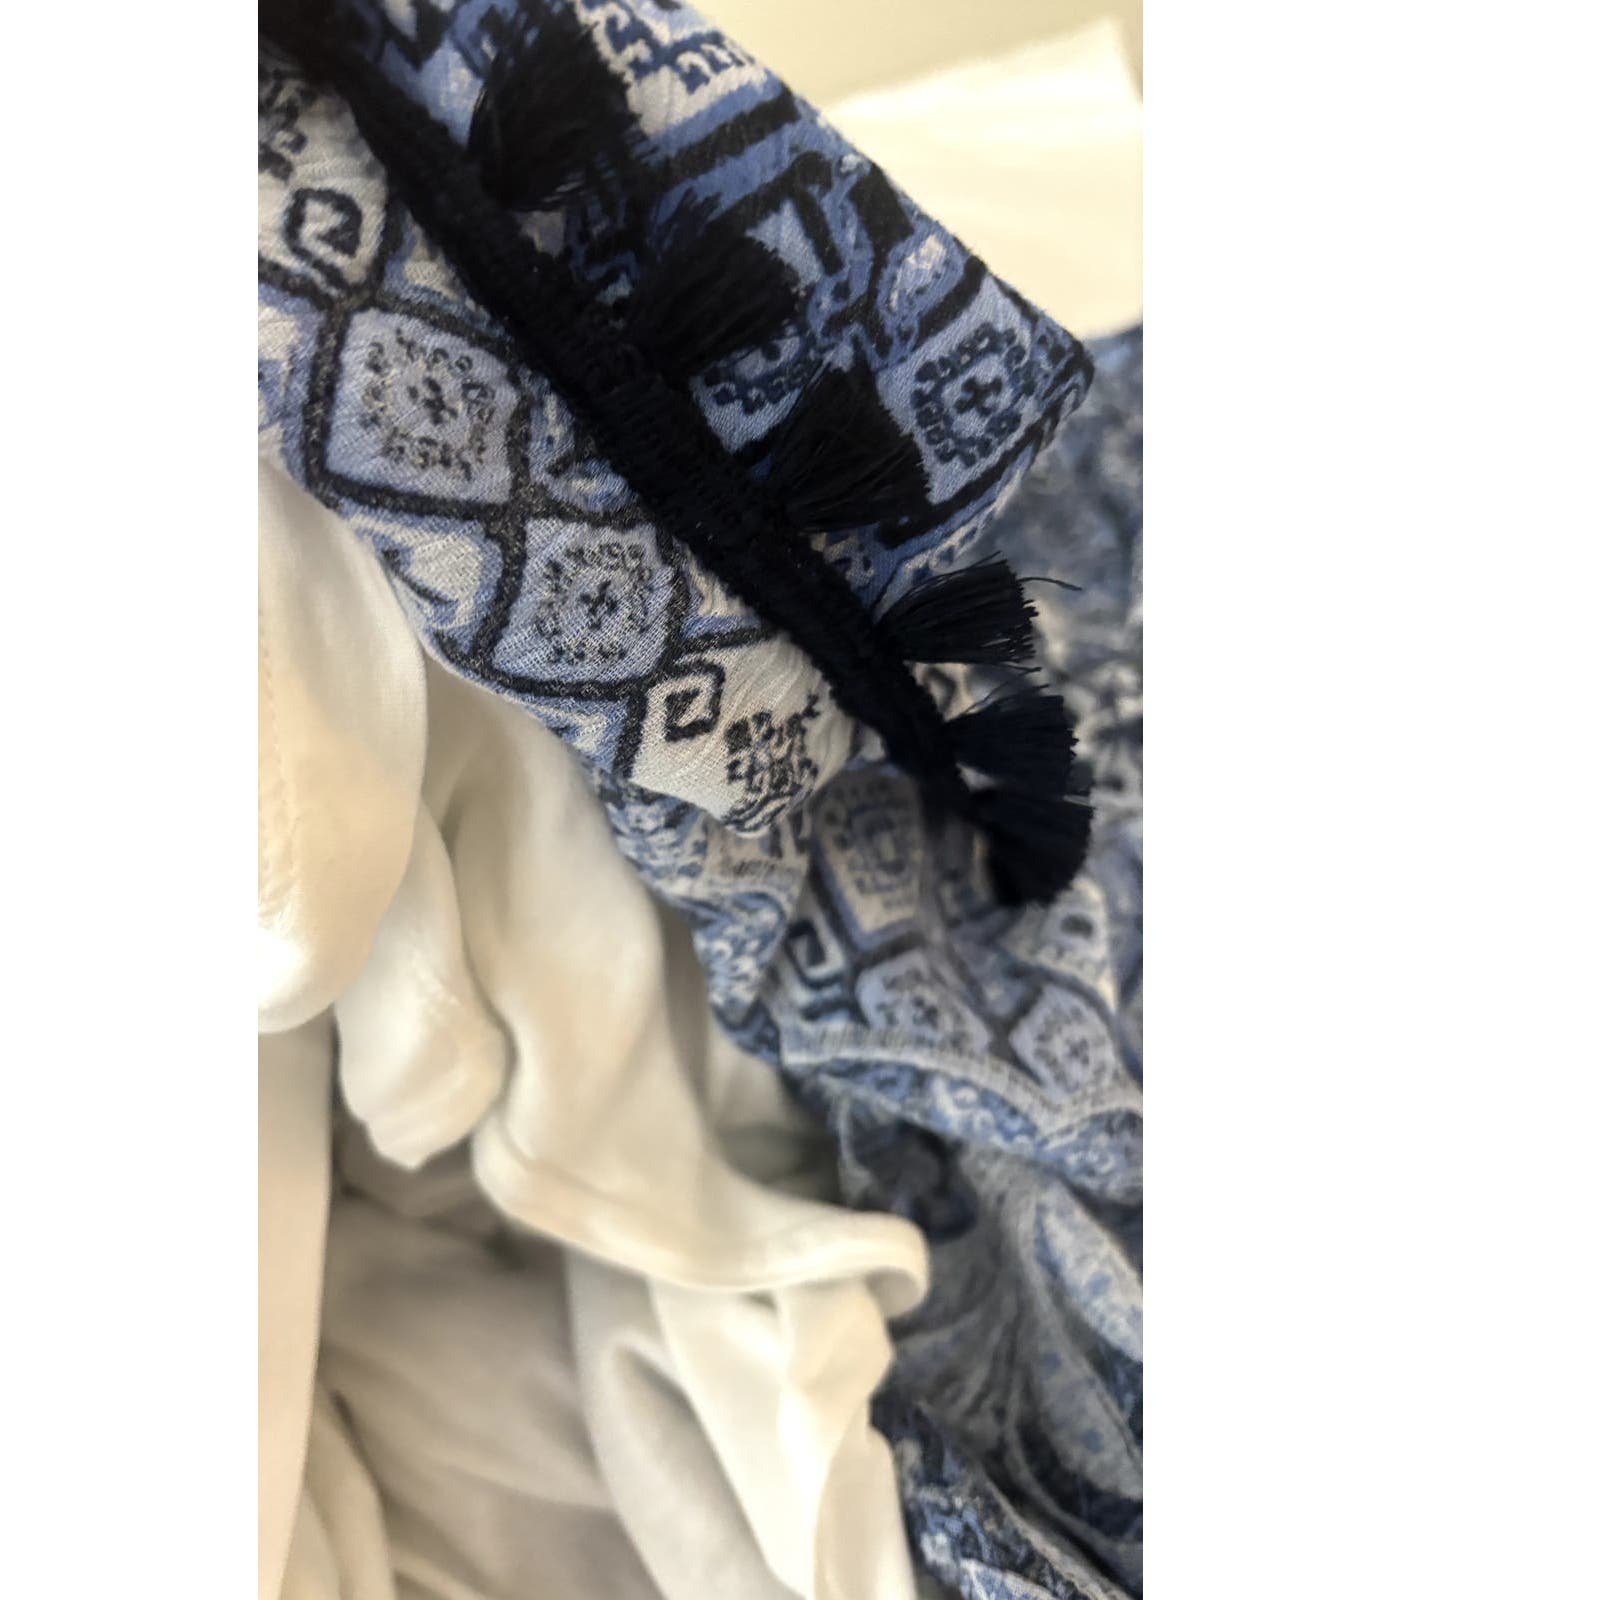 Latest  J Jill  Petite Blue Floral Tassel Fringe Boho Maxi Skirt Size Medium(PM) mpnwUrxEQ online store